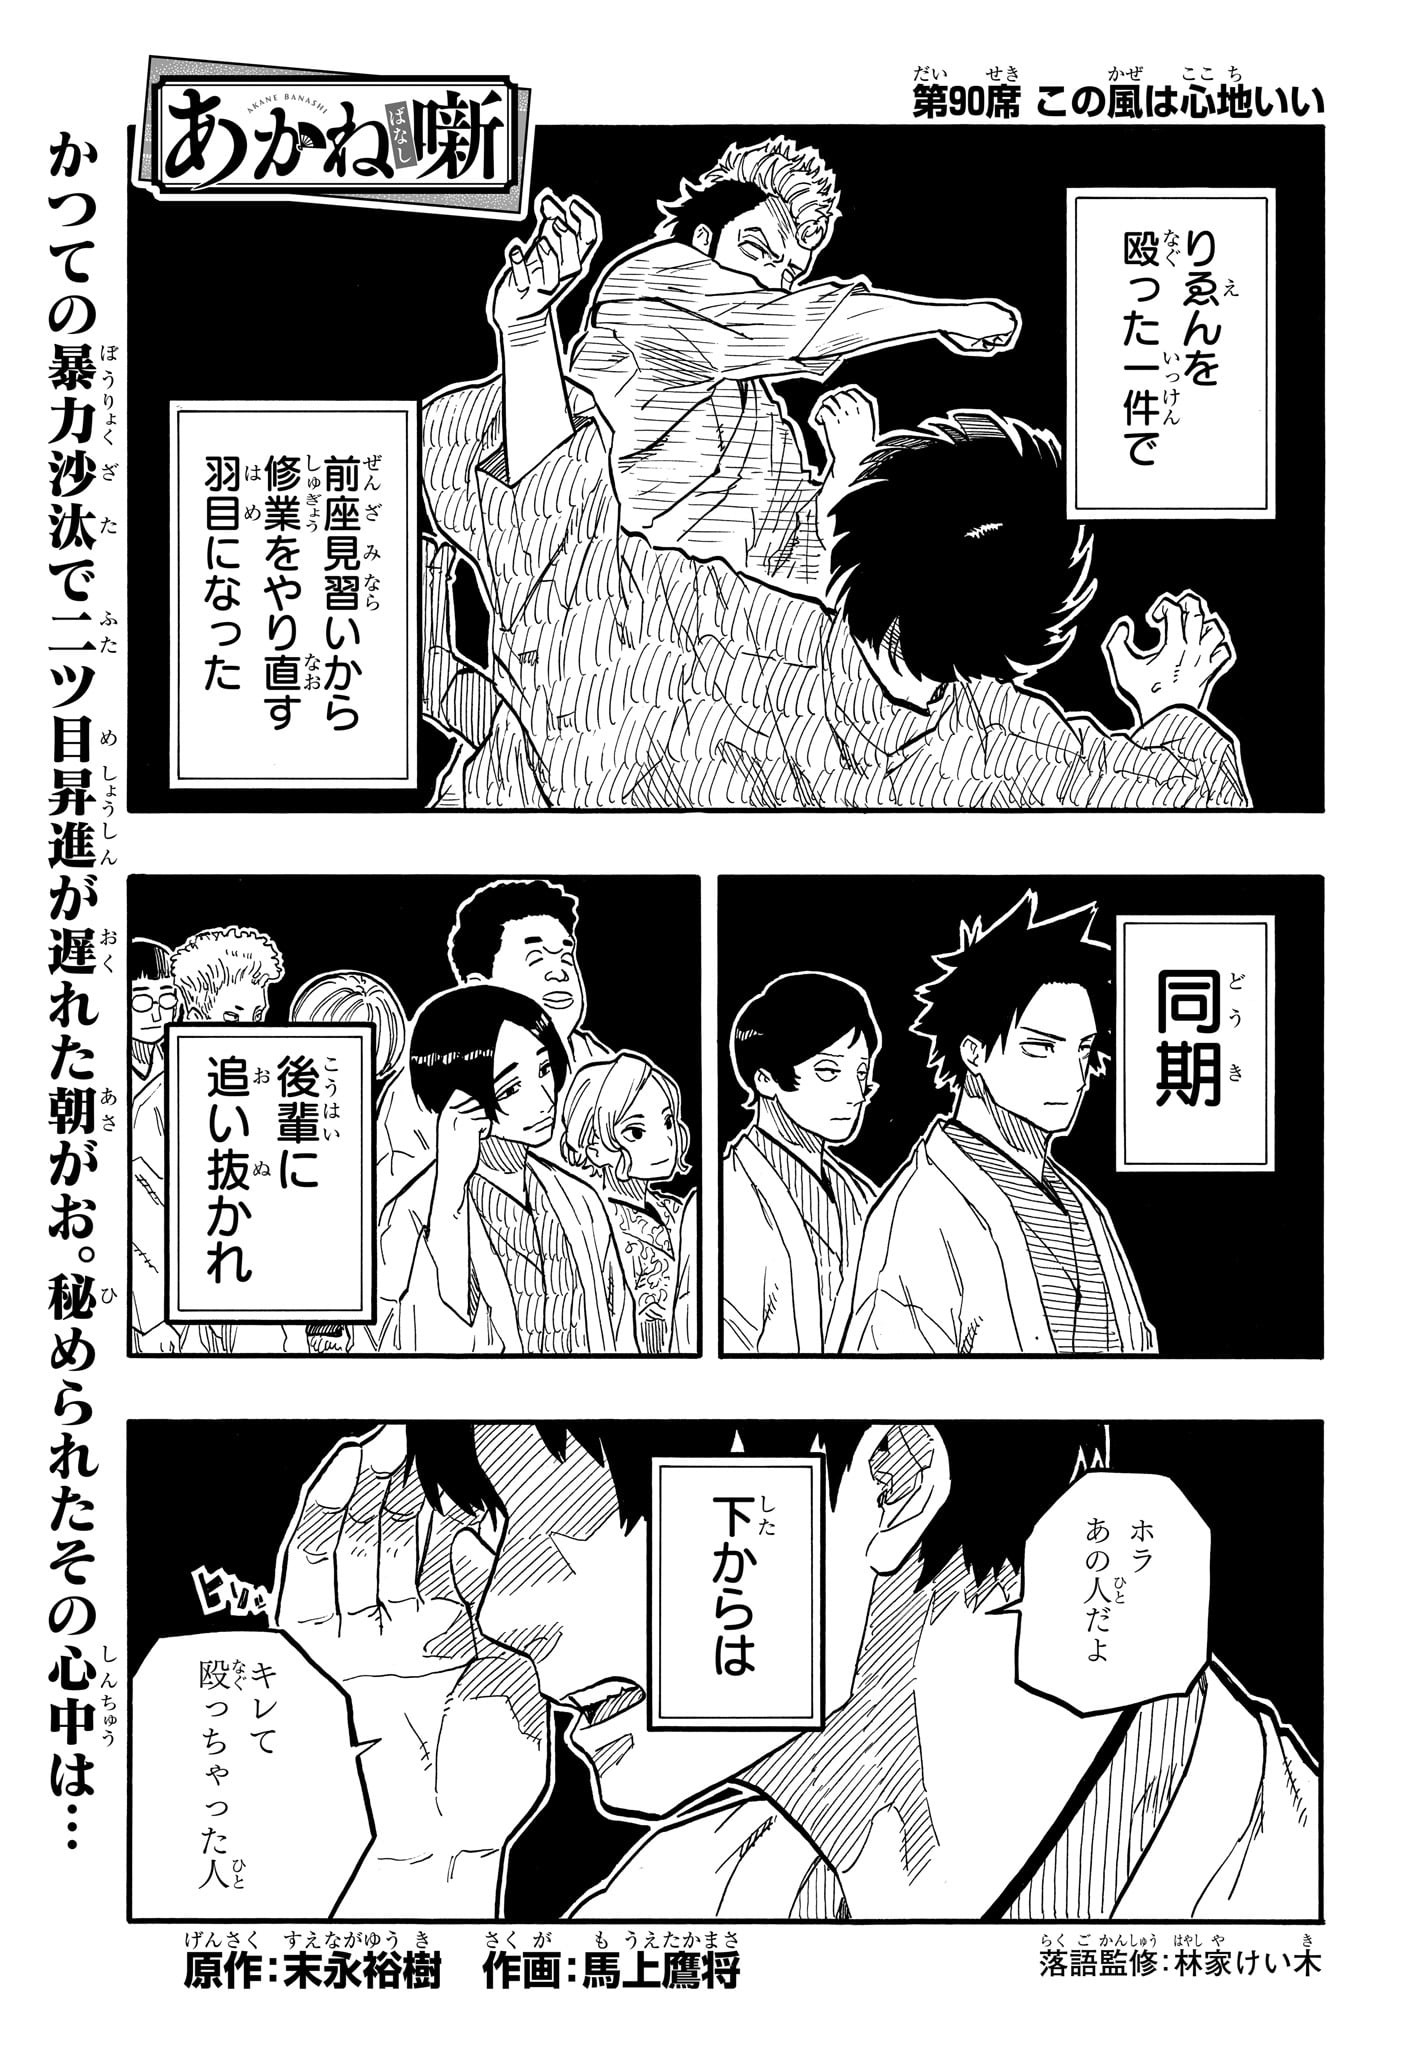 Akane-Banashi - Chapter 90 - Page 1